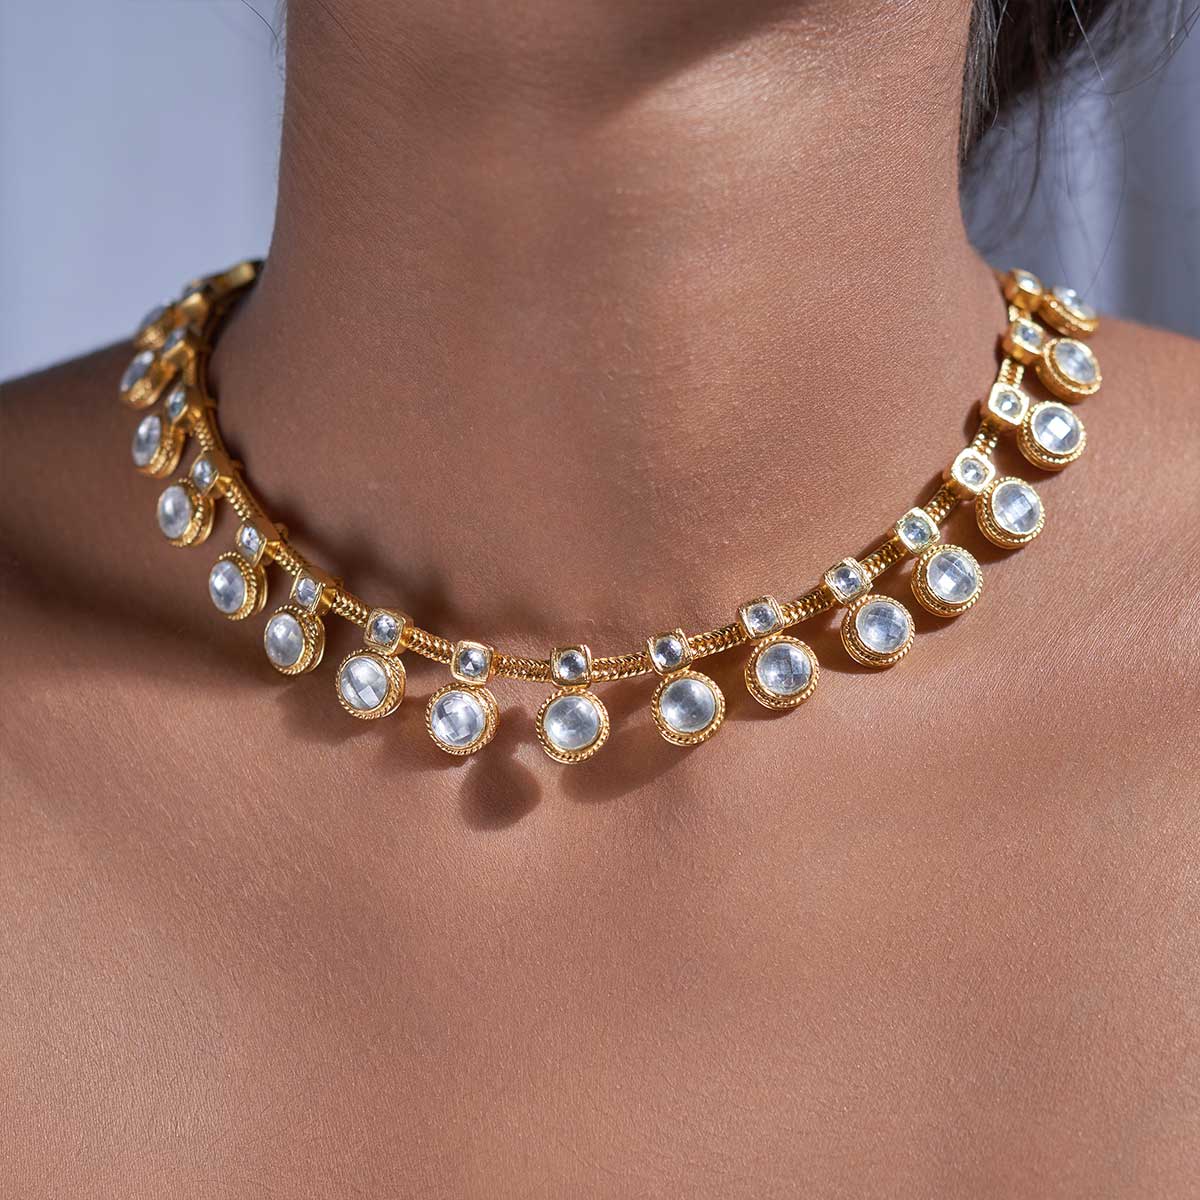 Sindhura necklace